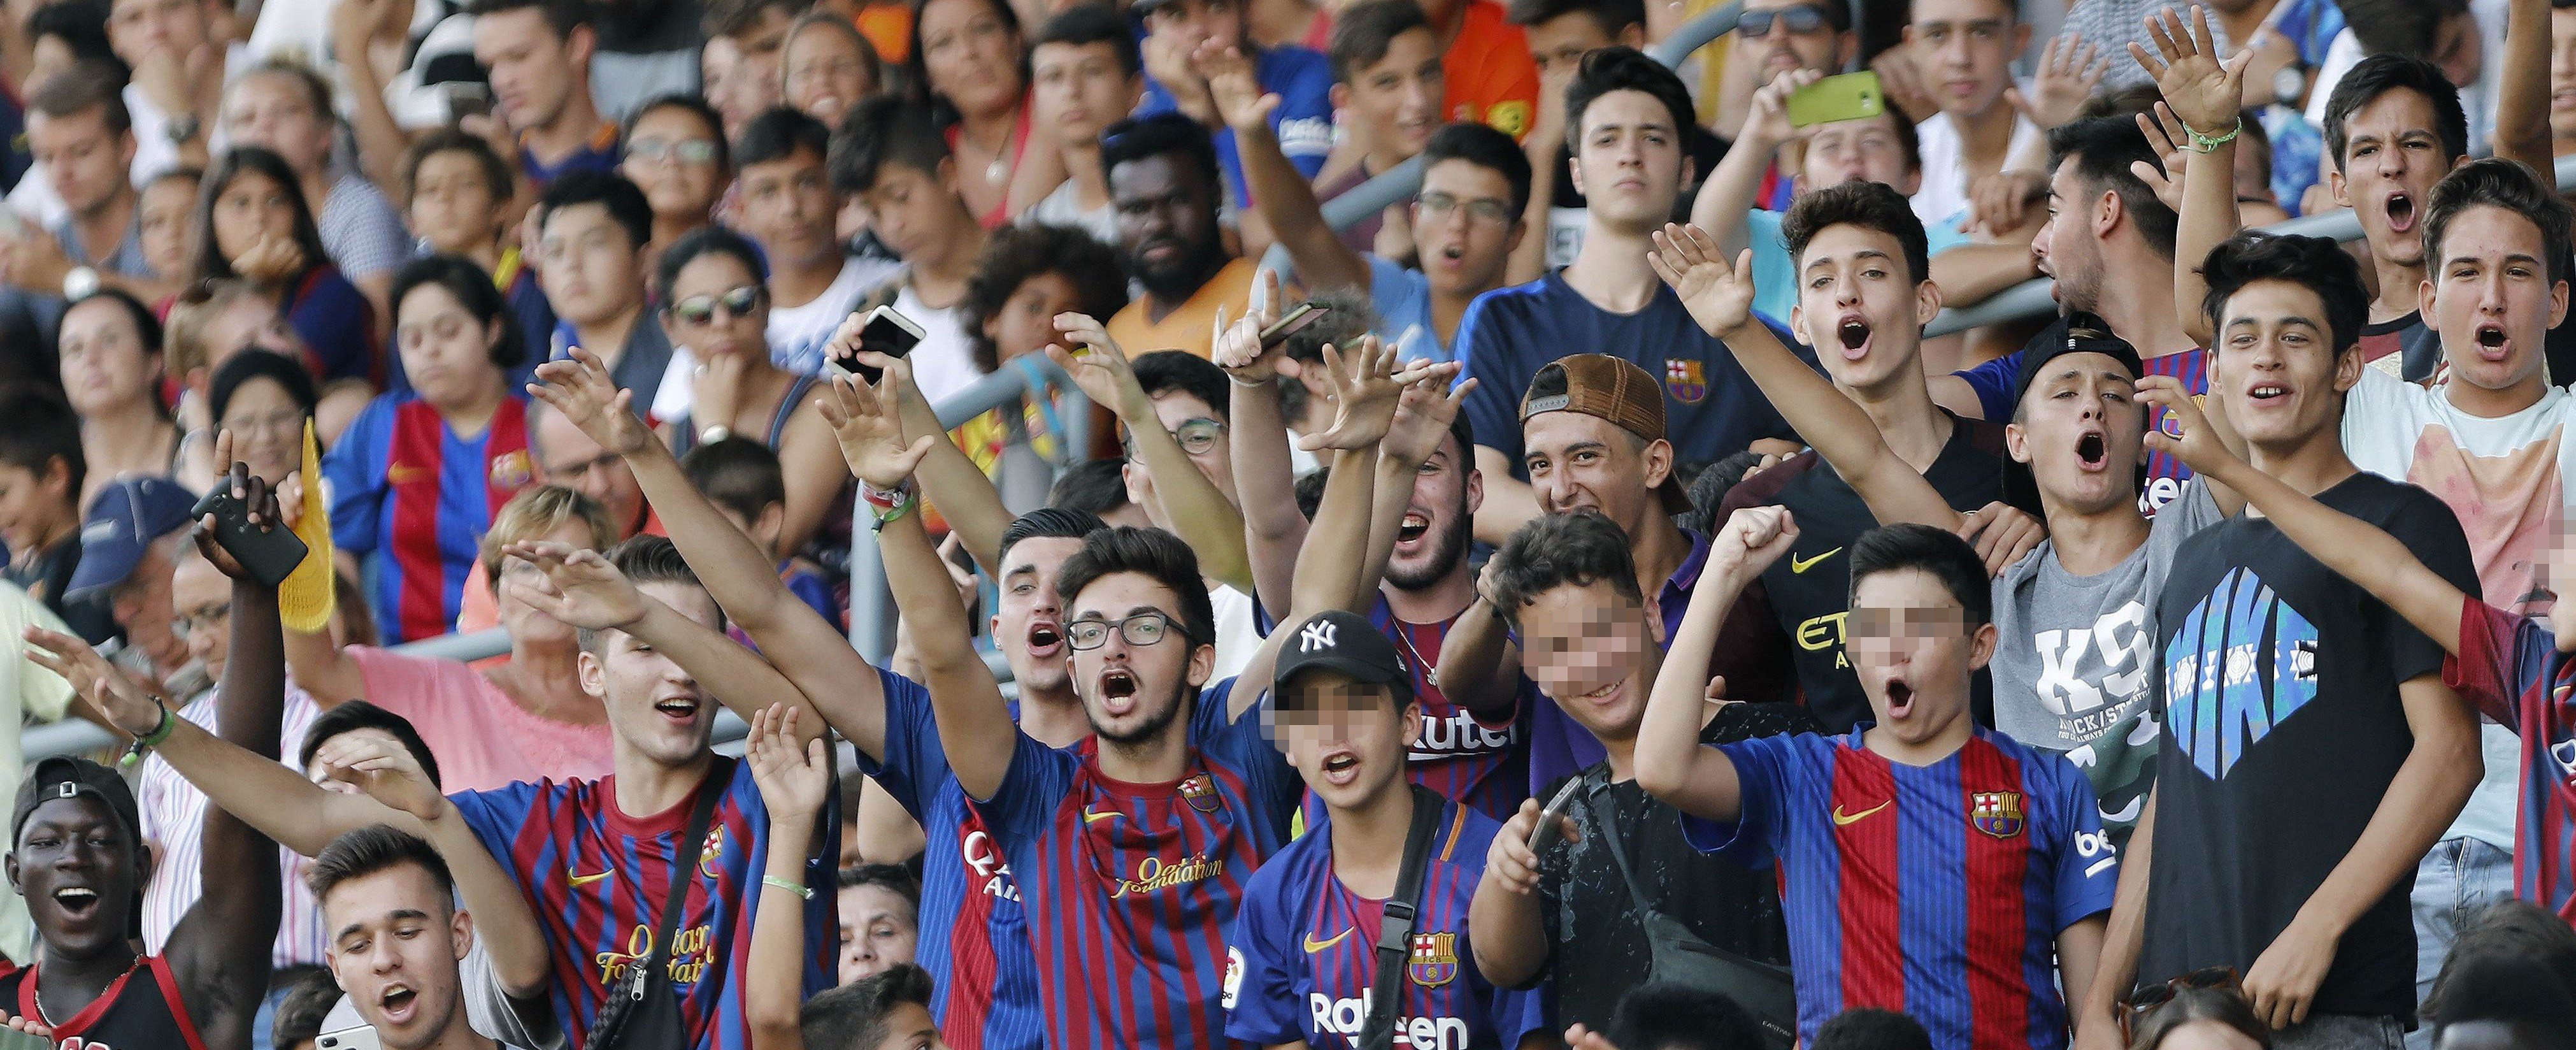 Un quadre: els culers s'indignen amb la nova samarreta del Barça